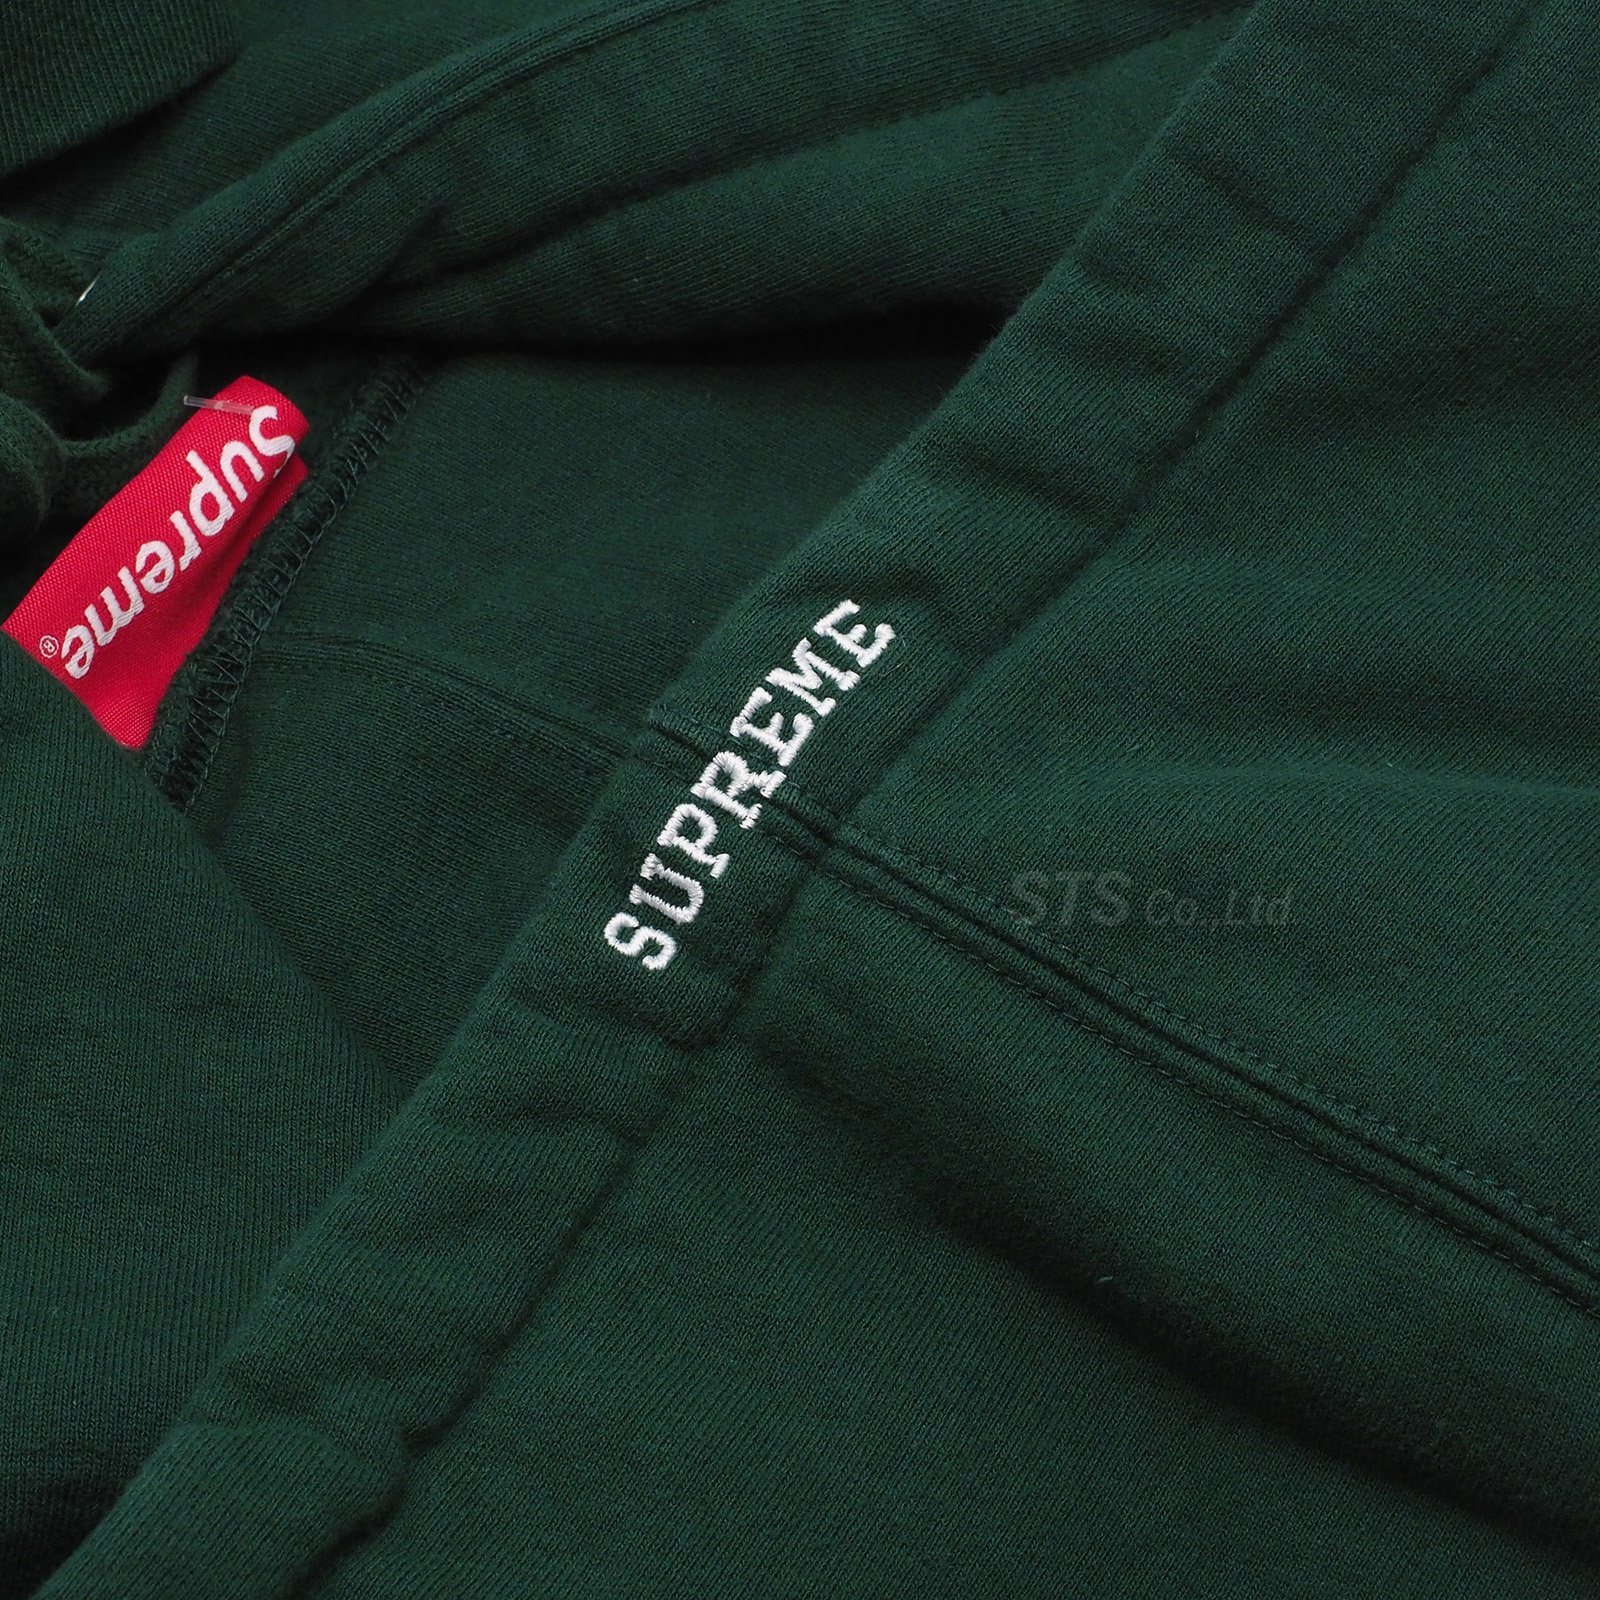 Supreme/ANTIHERO Hooded Sweatshirt - UG.SHAFT